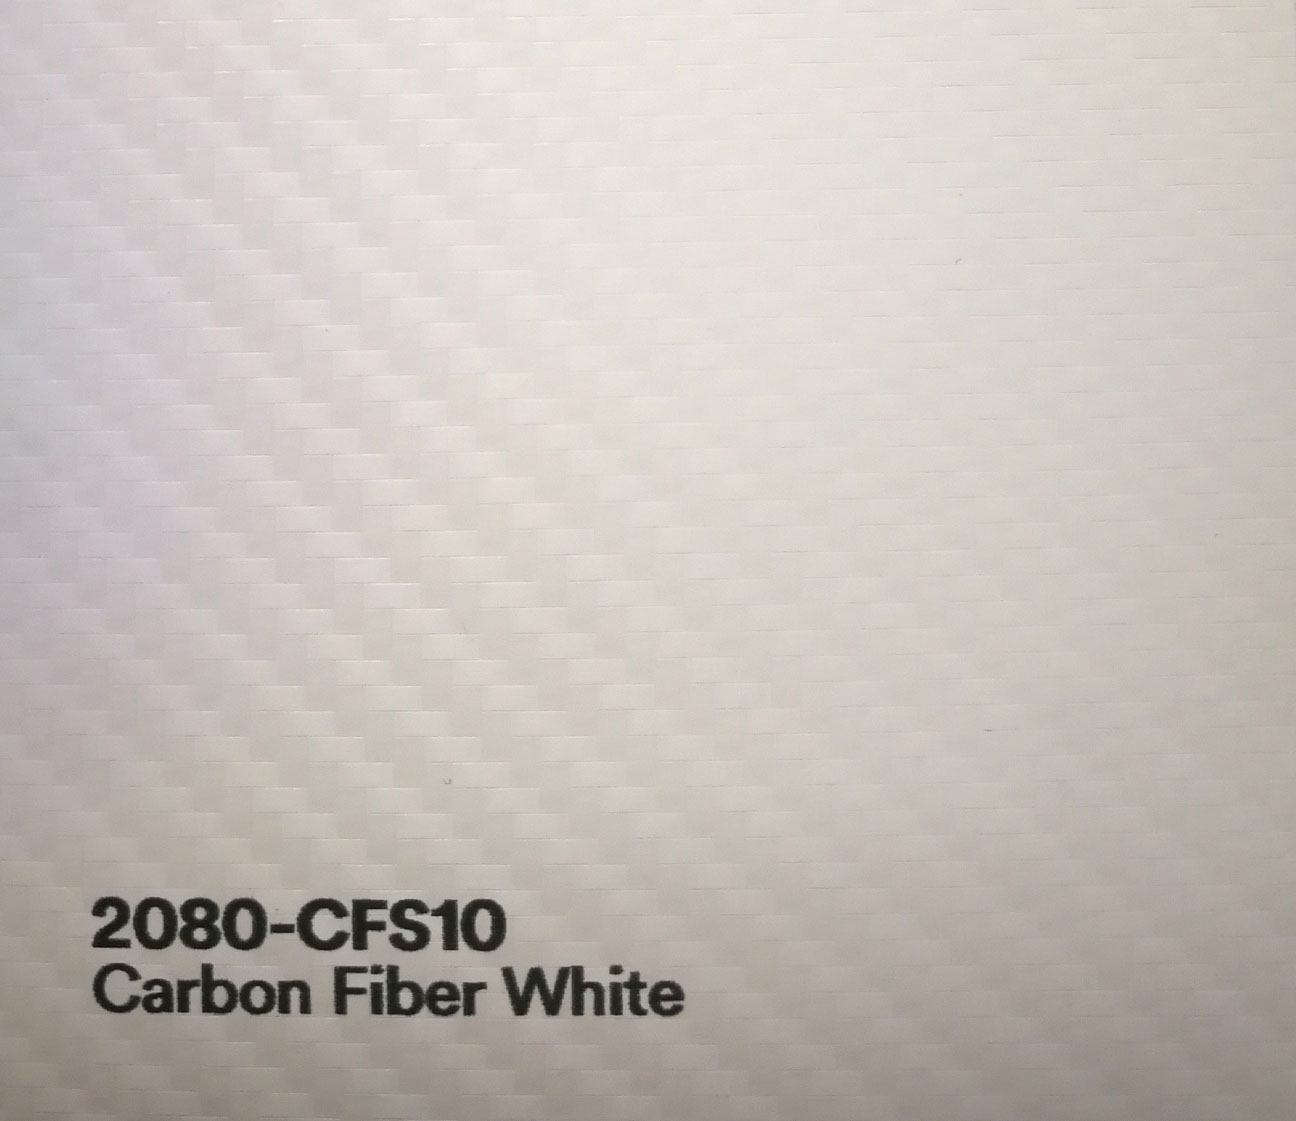 3M Carbon Folie Strukturfolie Anthrazit 0,60 in 90766 Fürth für 20,00 € zum  Verkauf